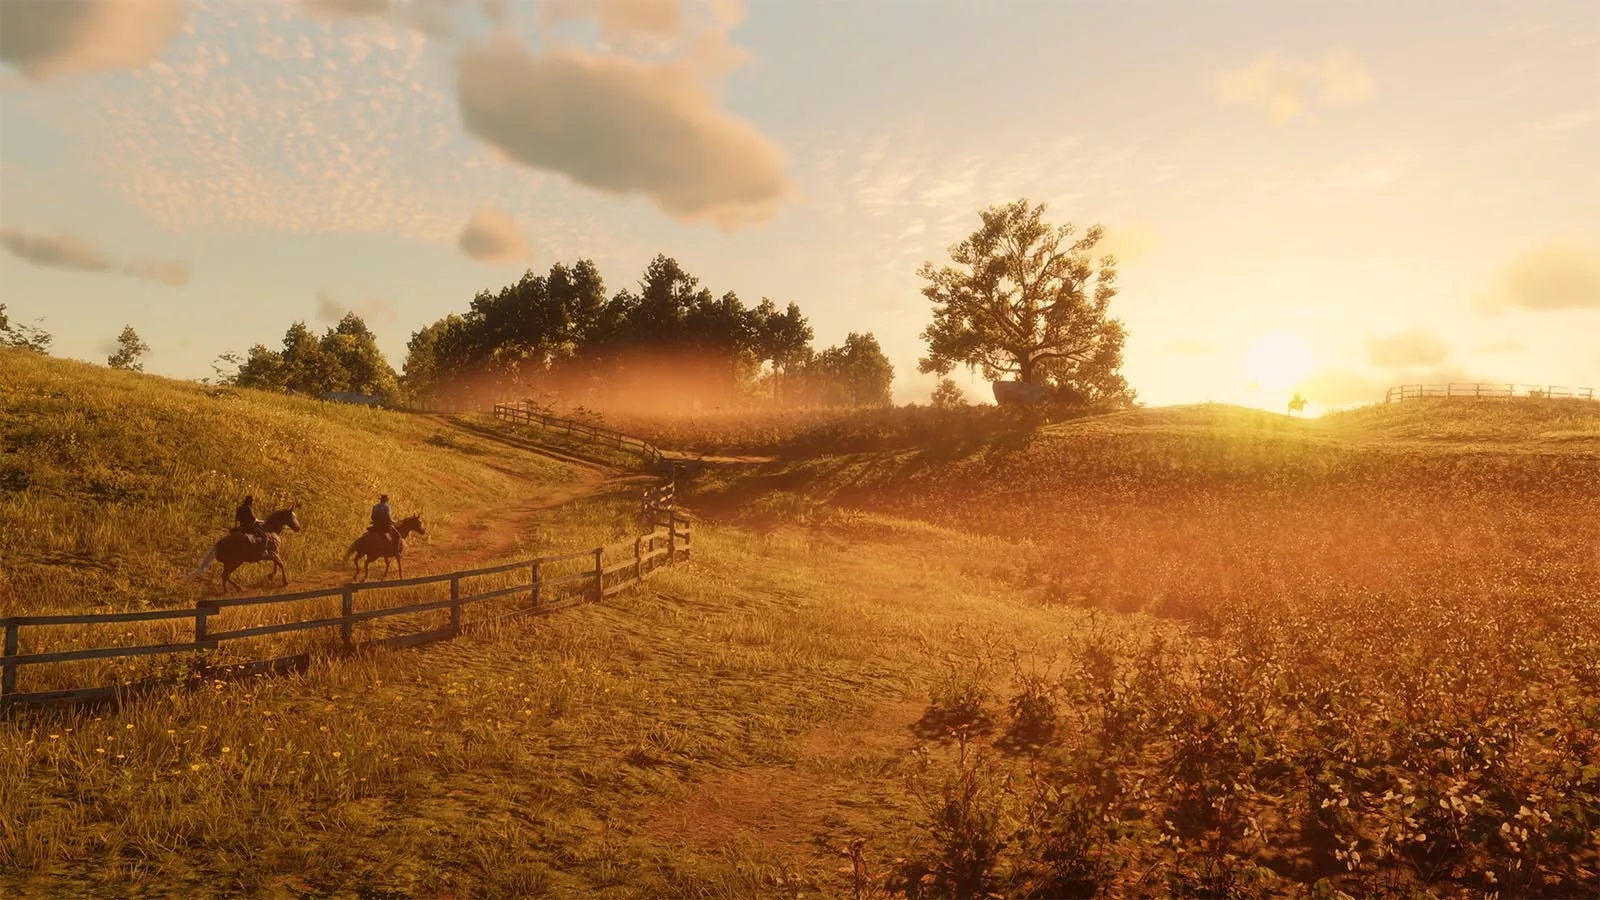 Двоє персонажів їдуть на конях полем вздовж огорожі, коли сонце заходить.